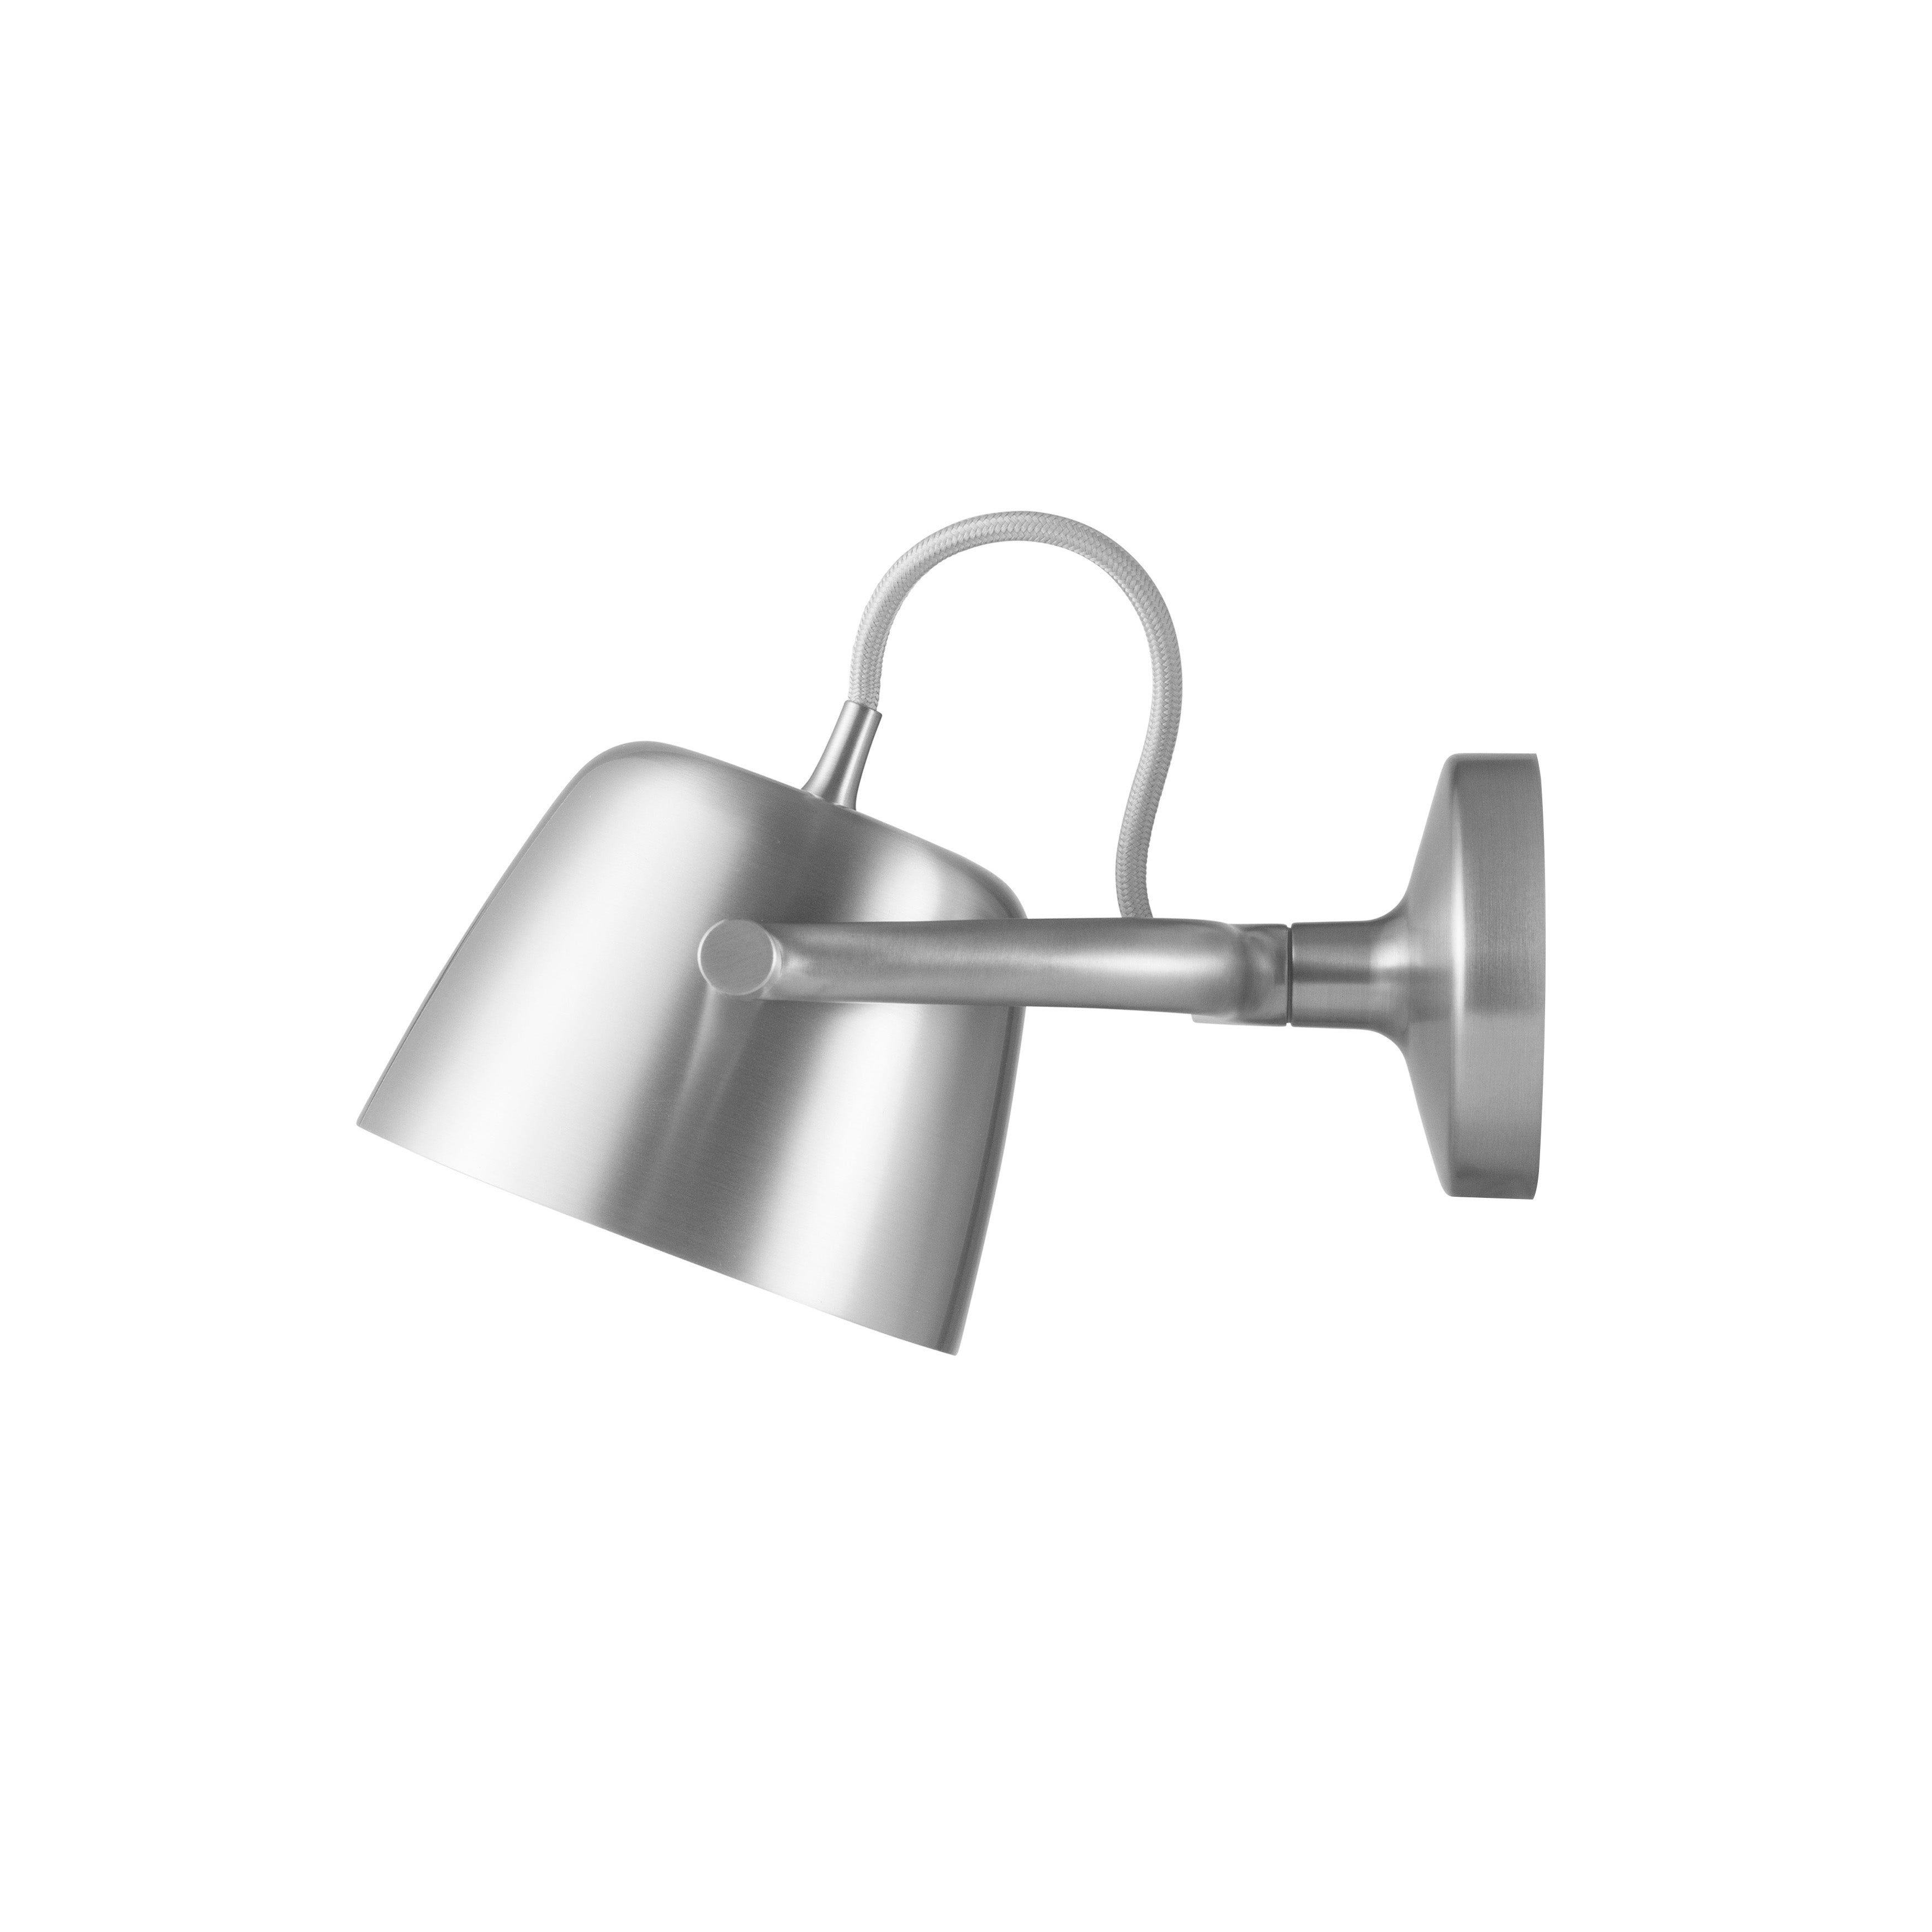 Tub Wall Lamp: Aluminum